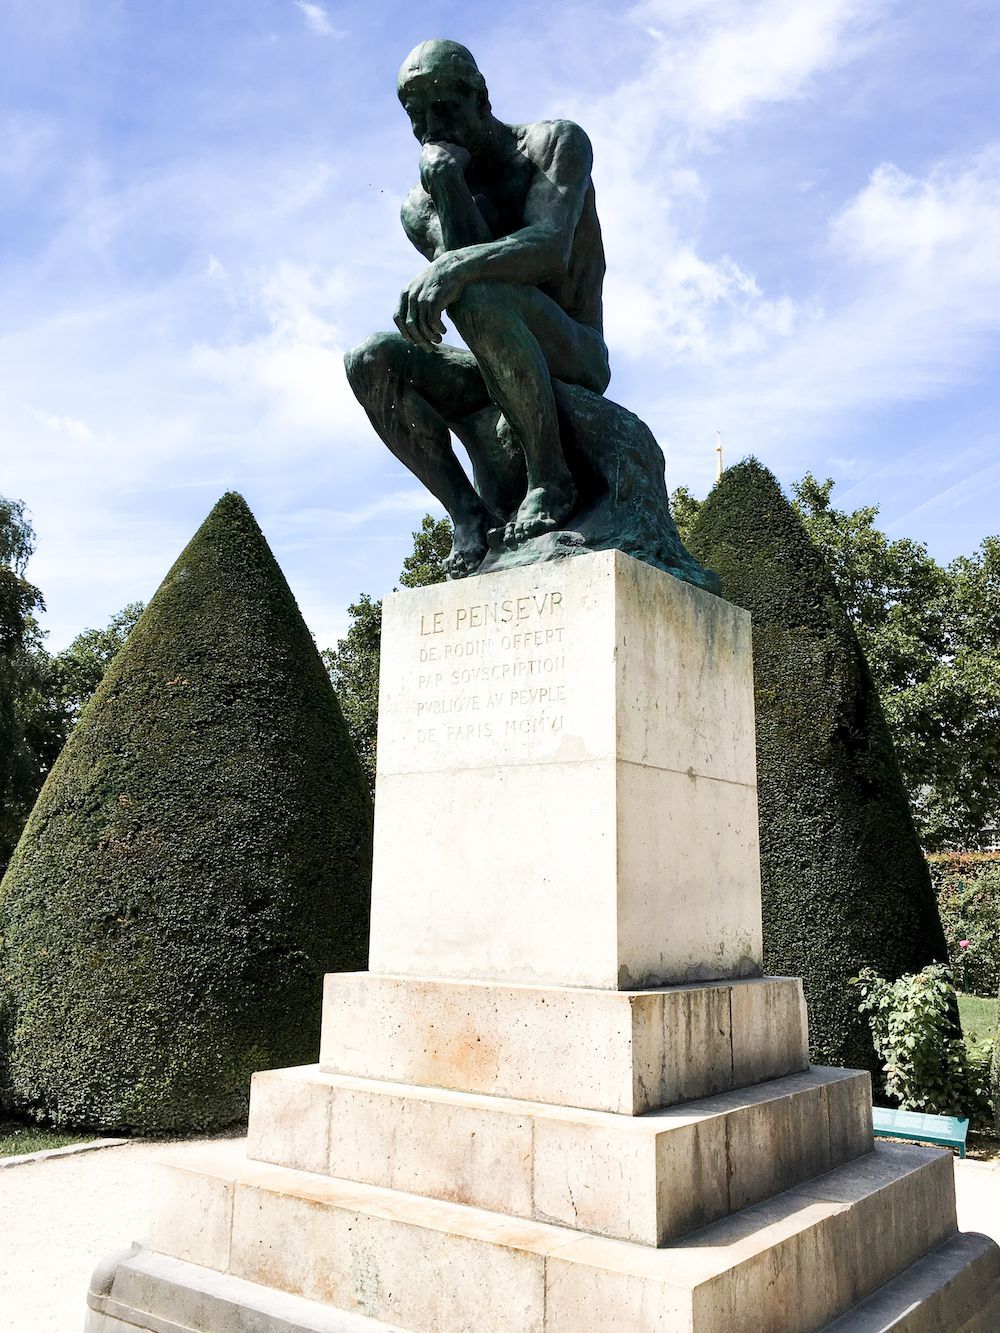 Musée Rodin: Sculptor Auguste Rodin’s Museum in Paris